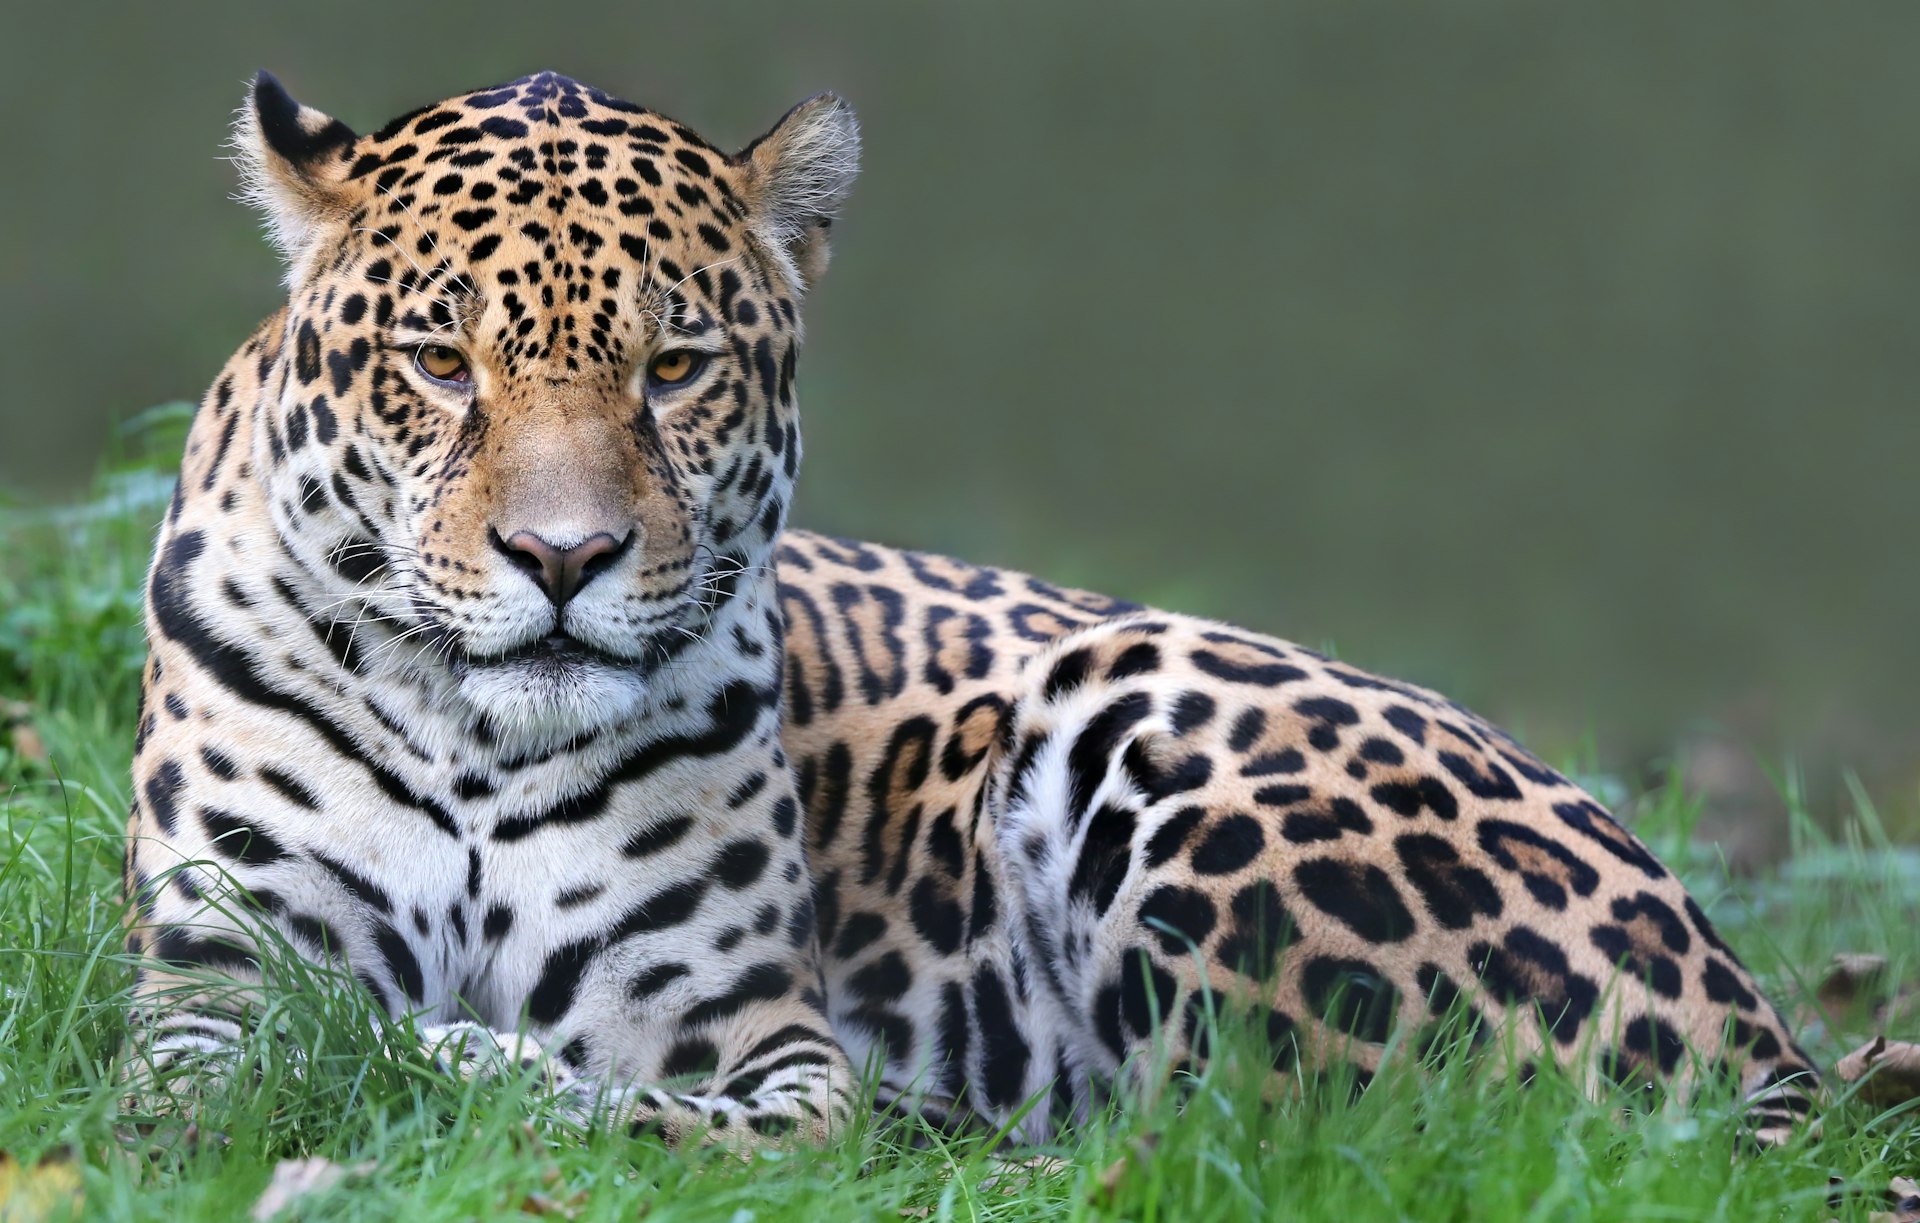 Close-up view of a jaguar in Ecuador